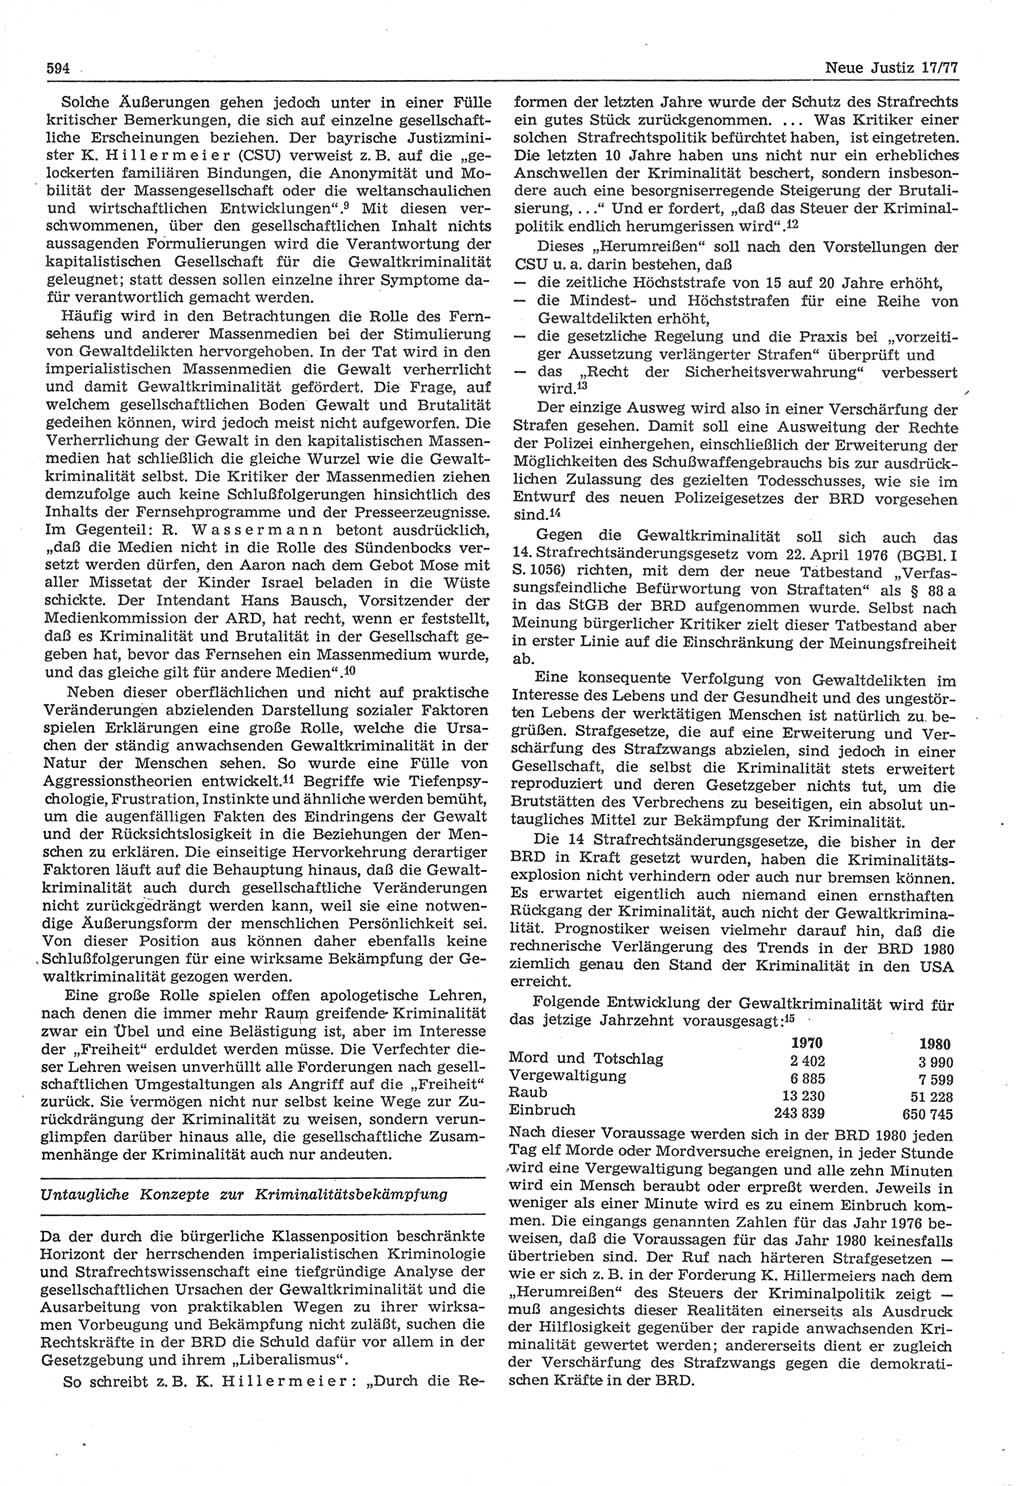 Neue Justiz (NJ), Zeitschrift für Recht und Rechtswissenschaft-Zeitschrift, sozialistisches Recht und Gesetzlichkeit, 31. Jahrgang 1977, Seite 594 (NJ DDR 1977, S. 594)